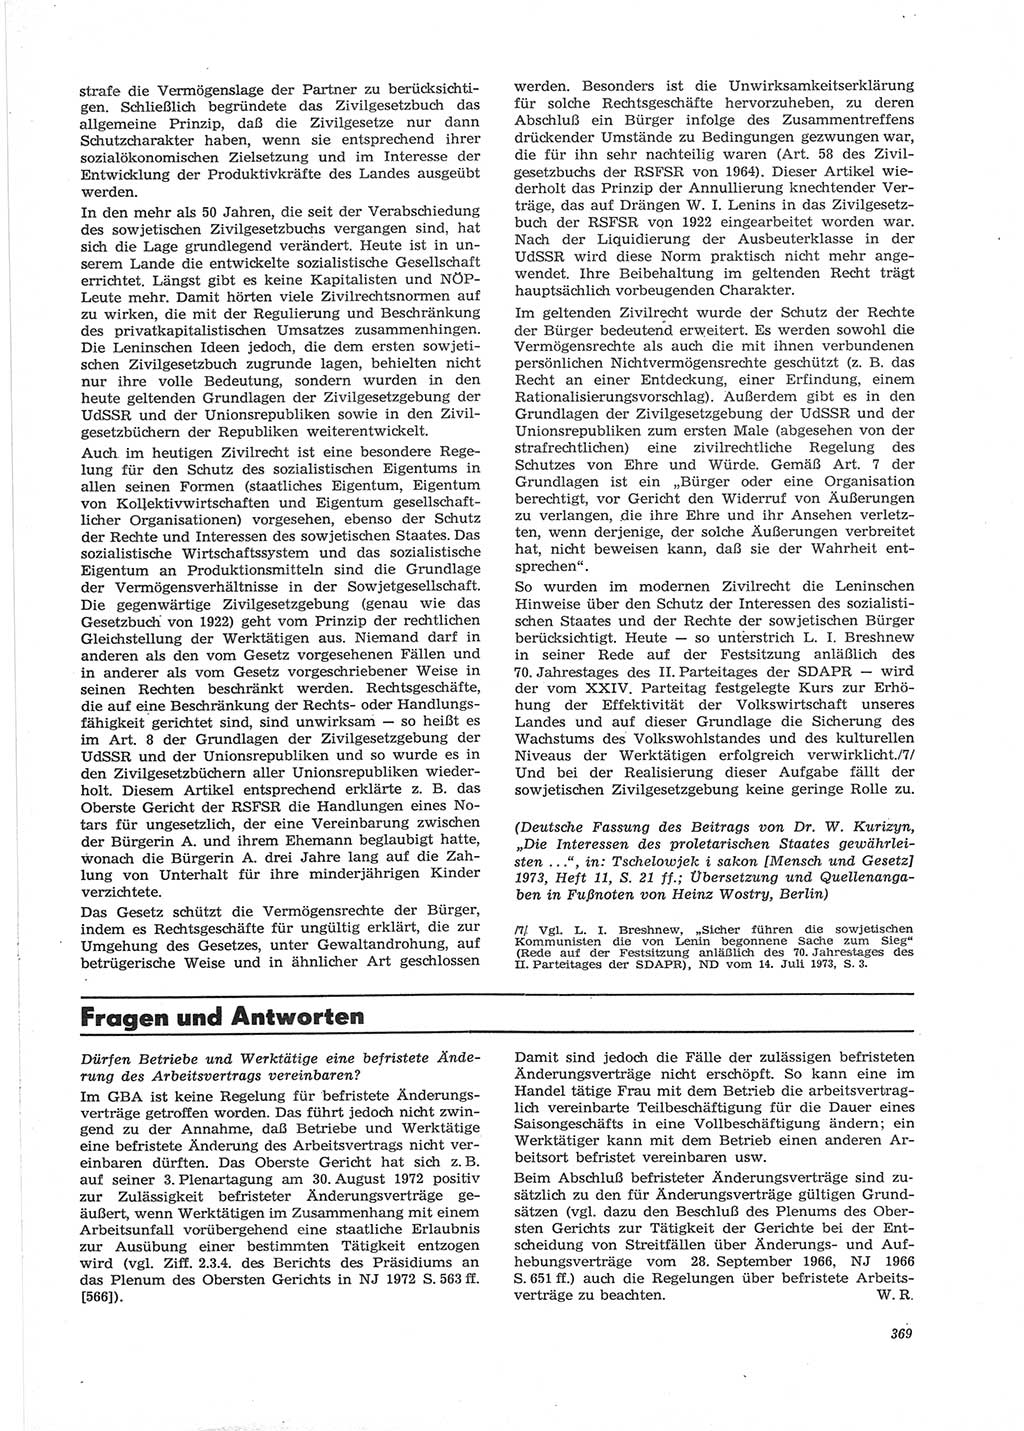 Neue Justiz (NJ), Zeitschrift für Recht und Rechtswissenschaft [Deutsche Demokratische Republik (DDR)], 28. Jahrgang 1974, Seite 369 (NJ DDR 1974, S. 369)